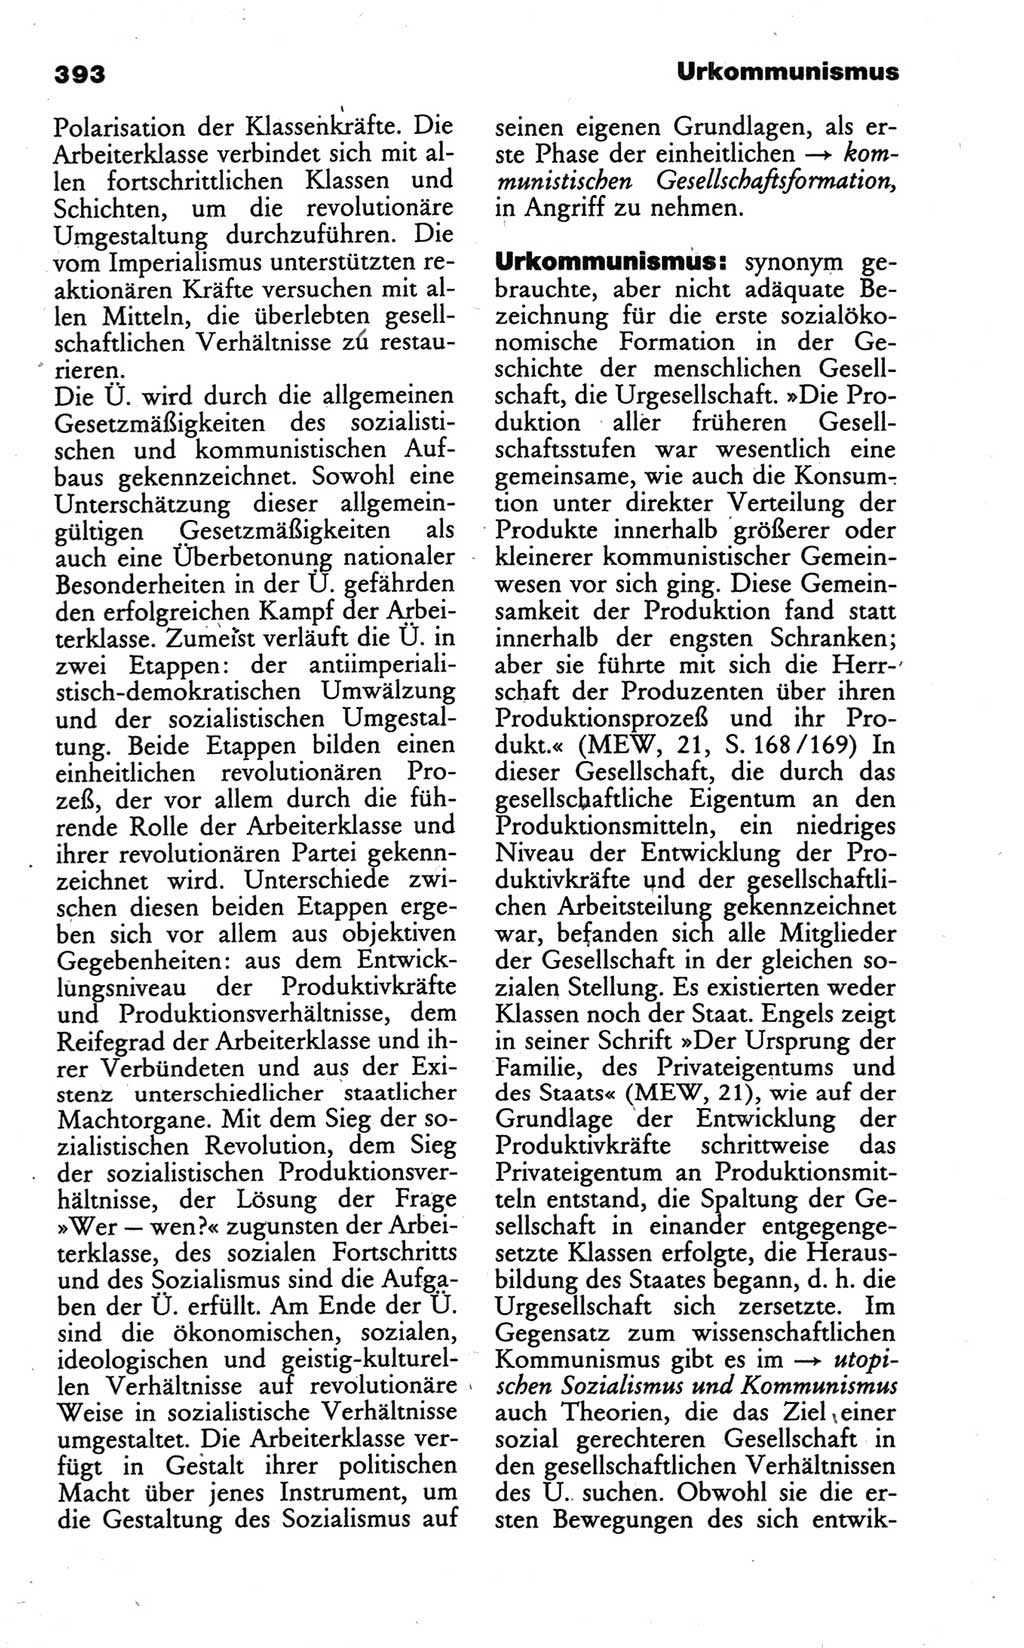 Wörterbuch des wissenschaftlichen Kommunismus [Deutsche Demokratische Republik (DDR)] 1986, Seite 393 (Wb. wiss. Komm. DDR 1986, S. 393)